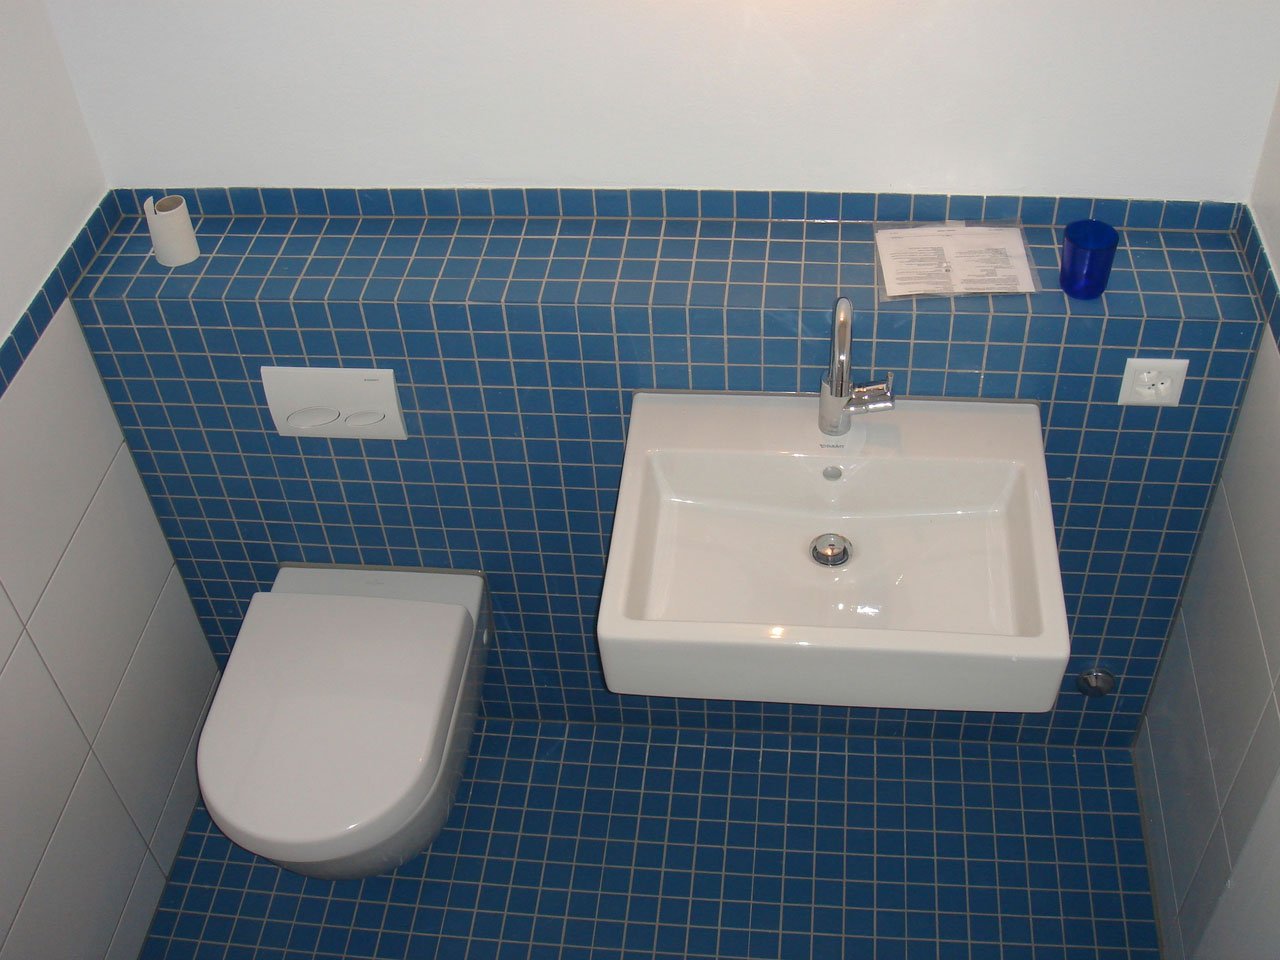 WC und Lavabo mit blauen Mosaiksteinen